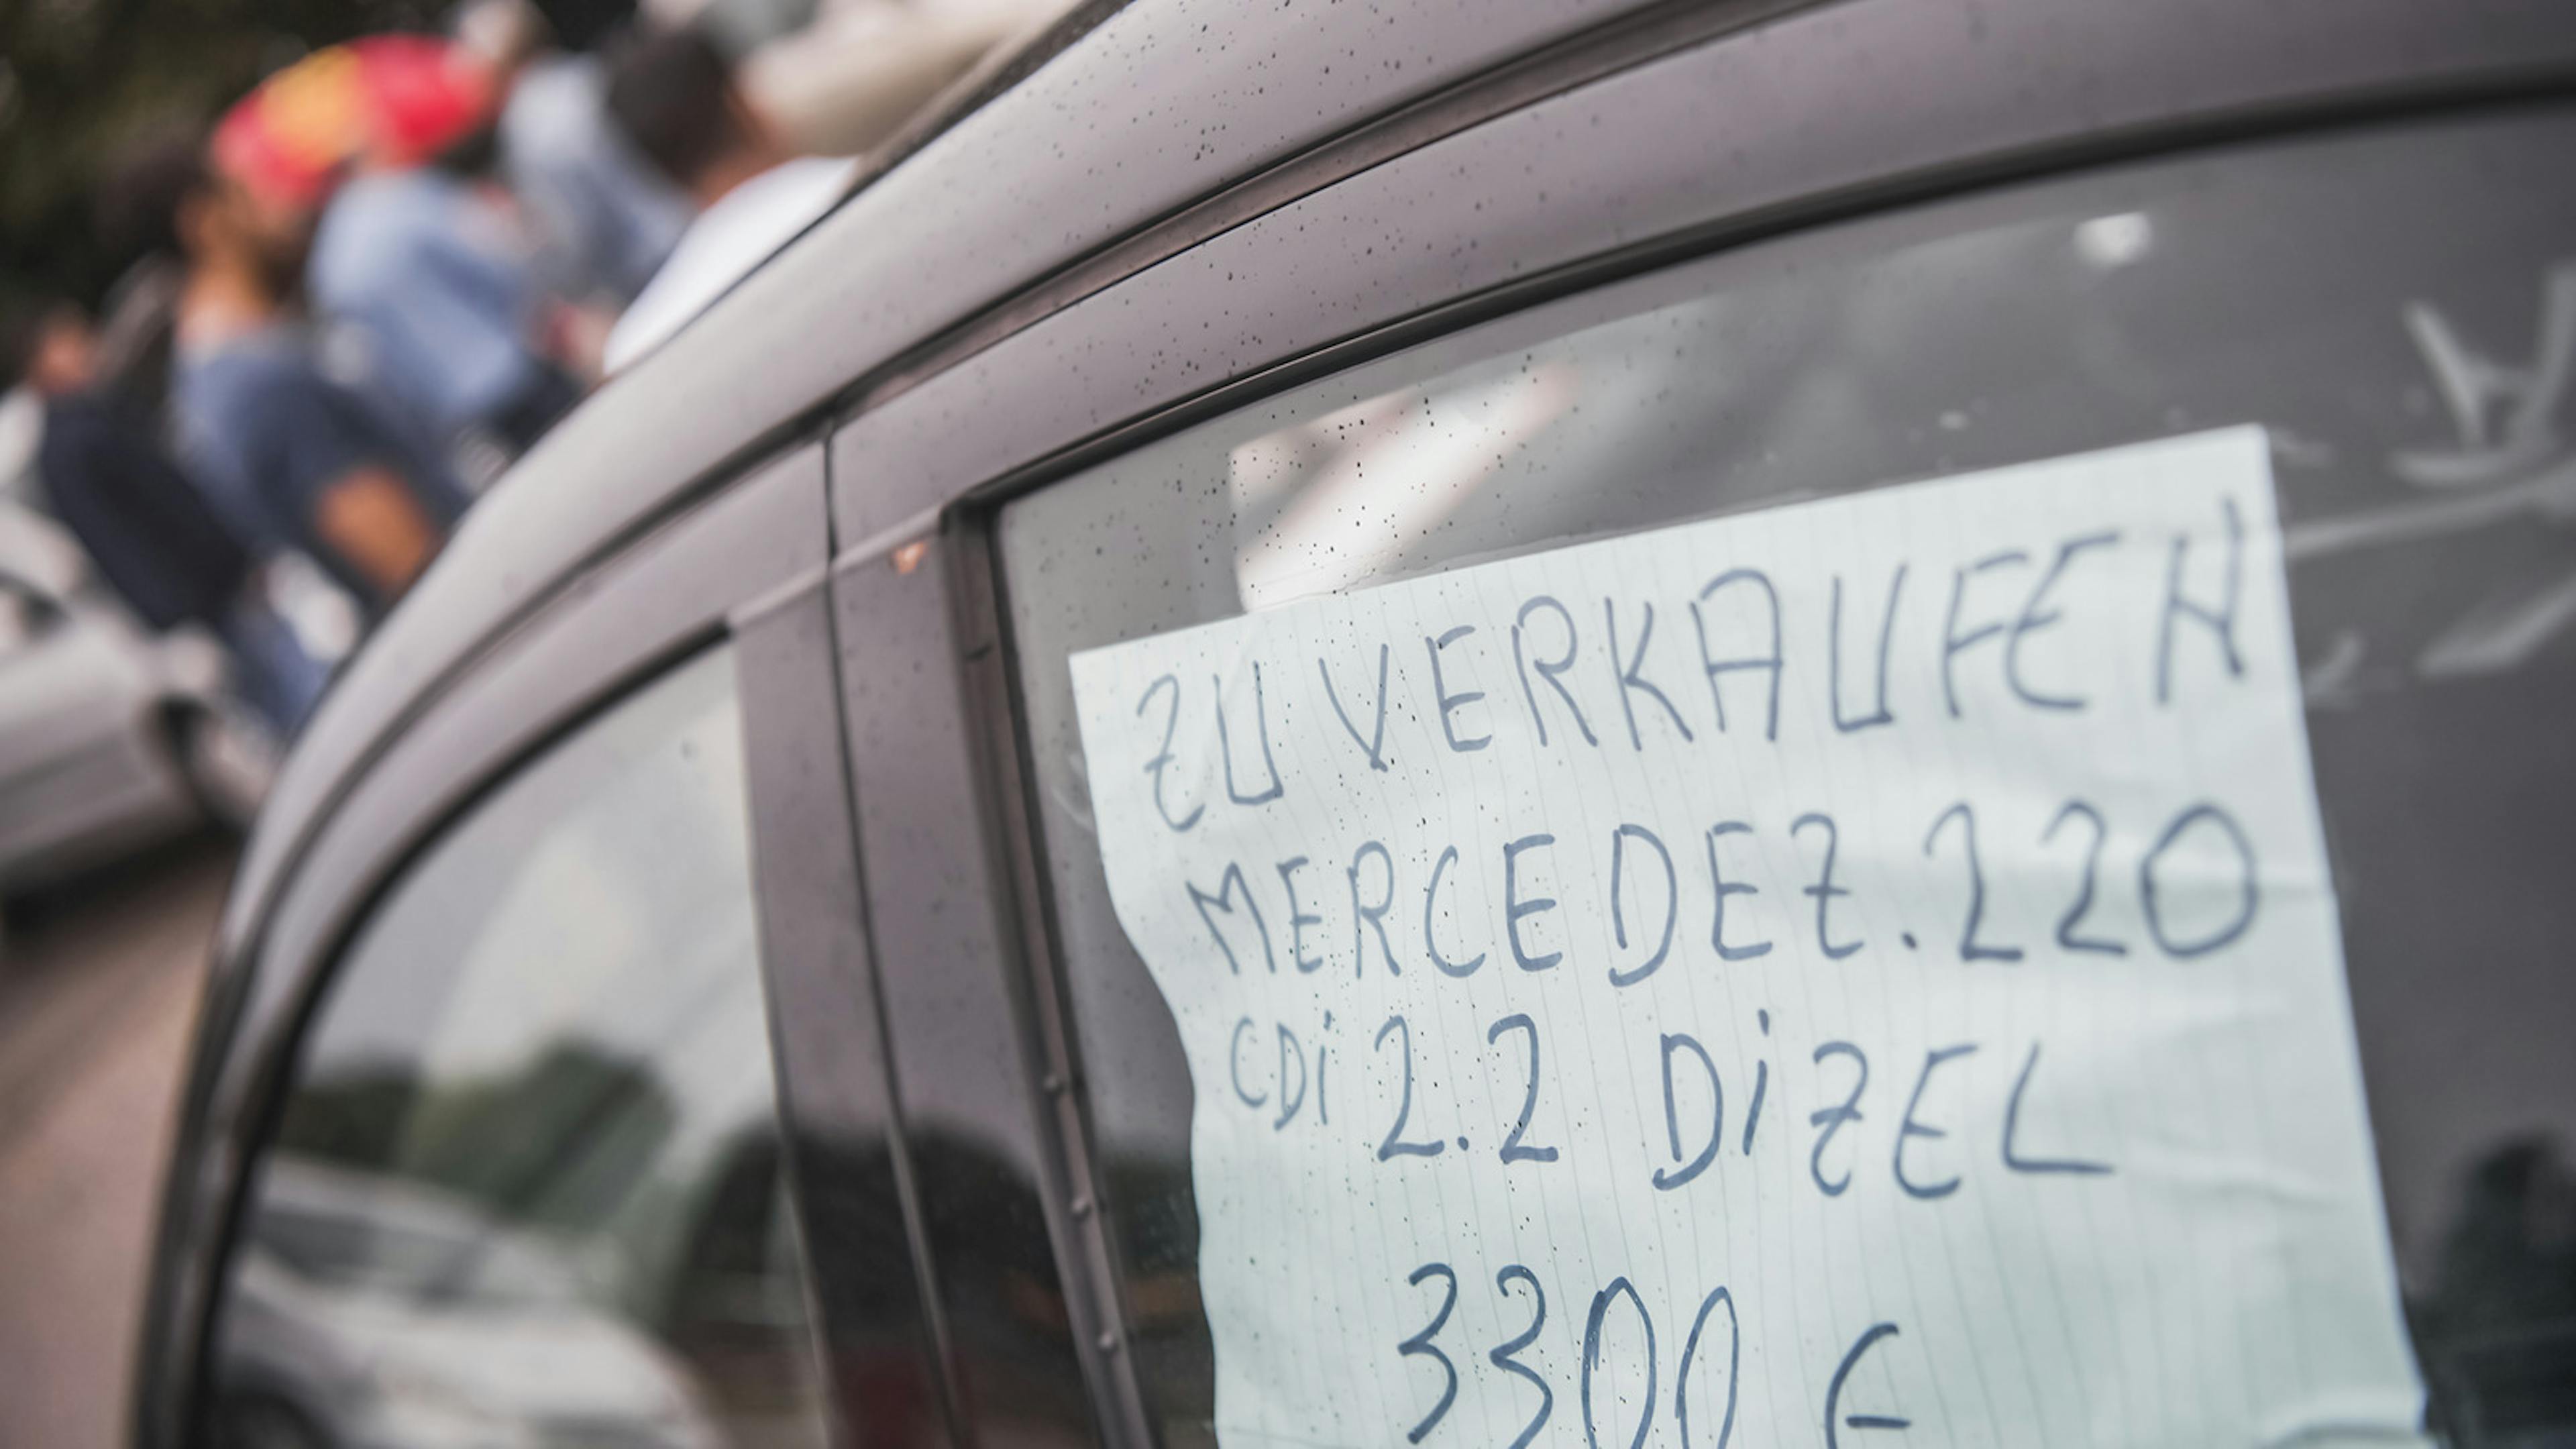 Ein handgeschriebener Zettel mit einer Verkaufsanzeige hängt im Fenster eines Autos